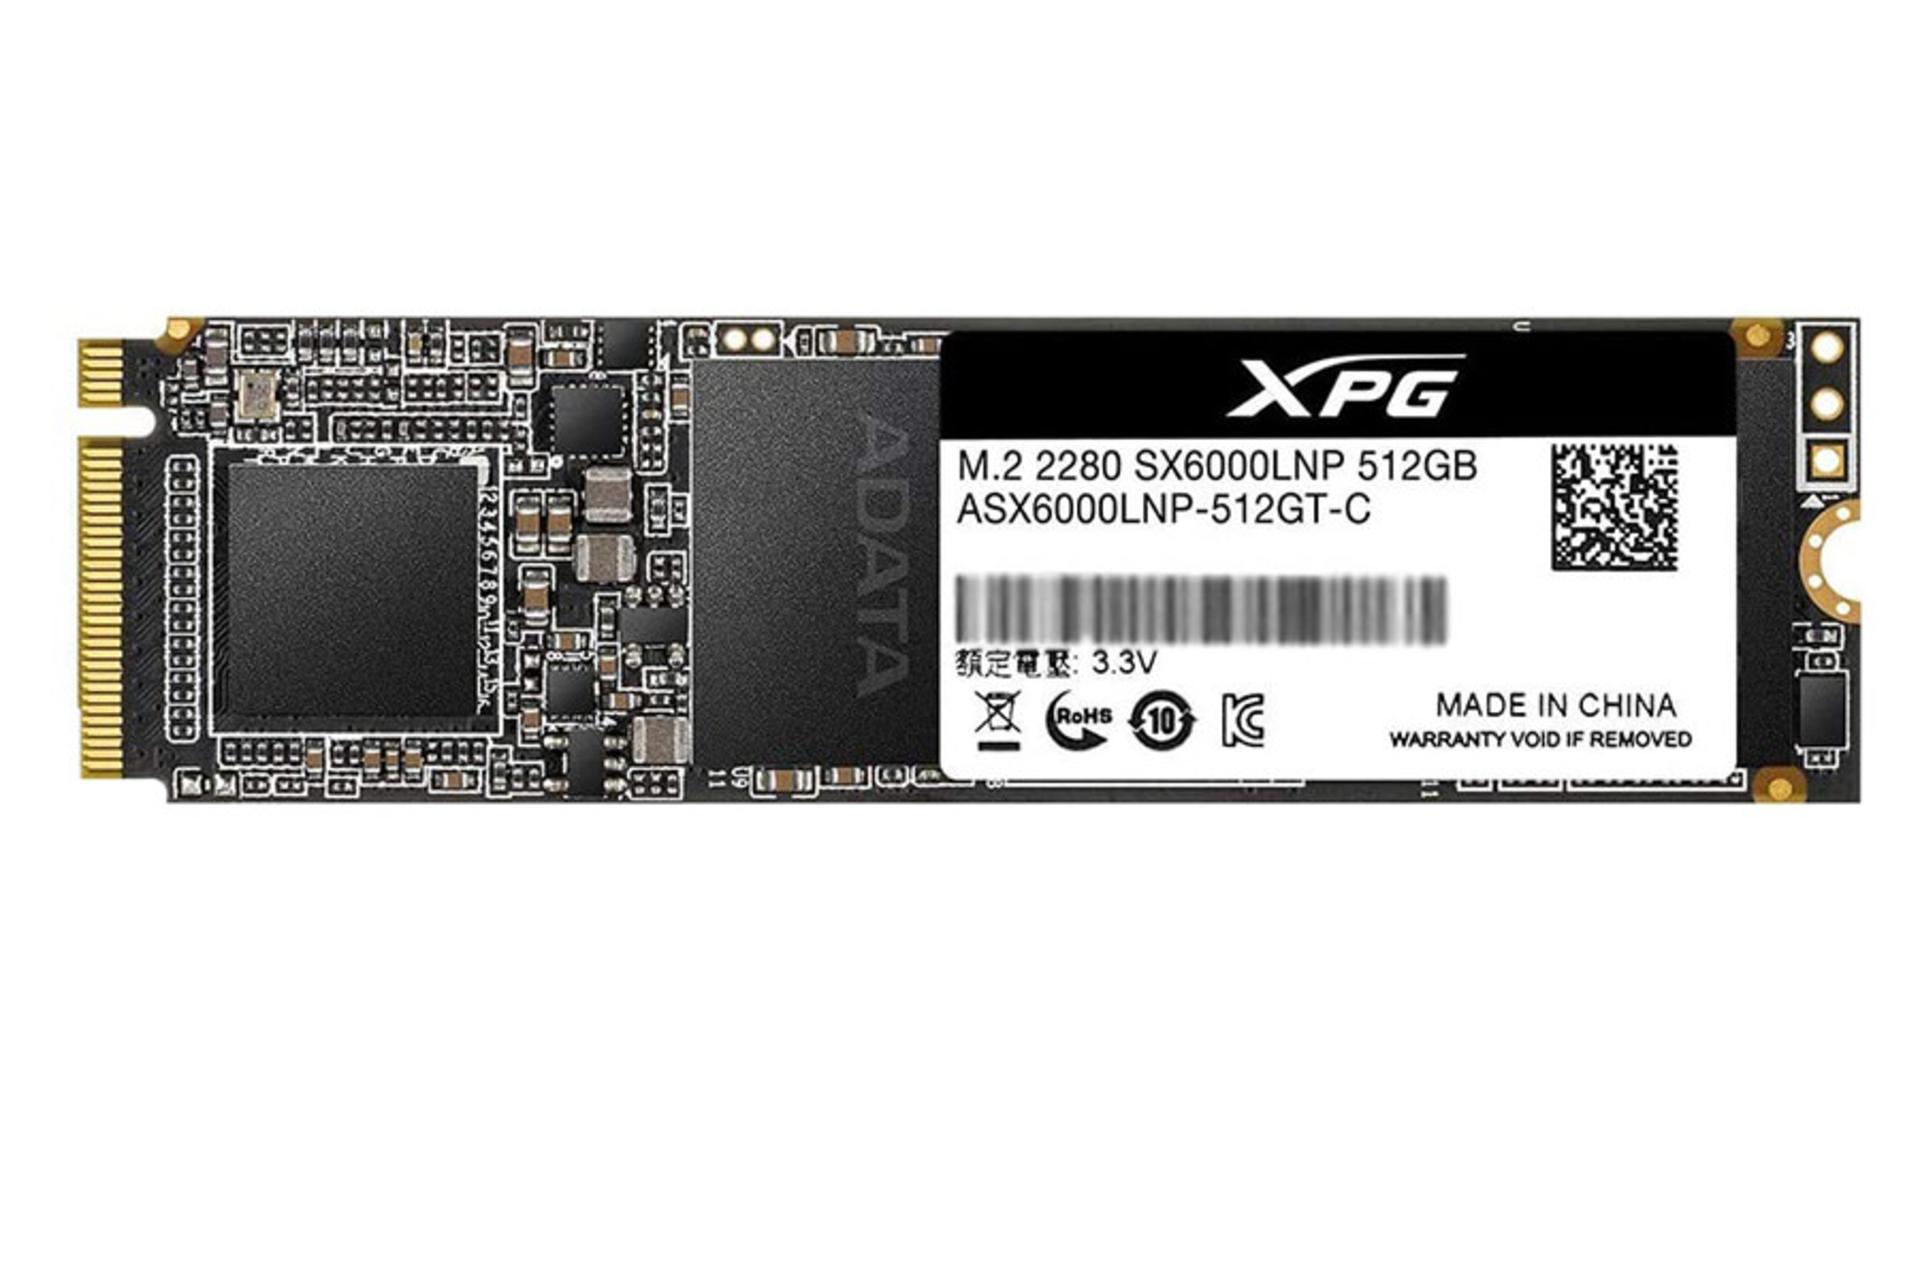 مرجع متخصصين ايران اي ديتا XPG SX6000 Lite PCIe M.2 ظرفيت 512 گيگابايت / ADATA XPG SX6000 Lite PCIe M.2 512GB